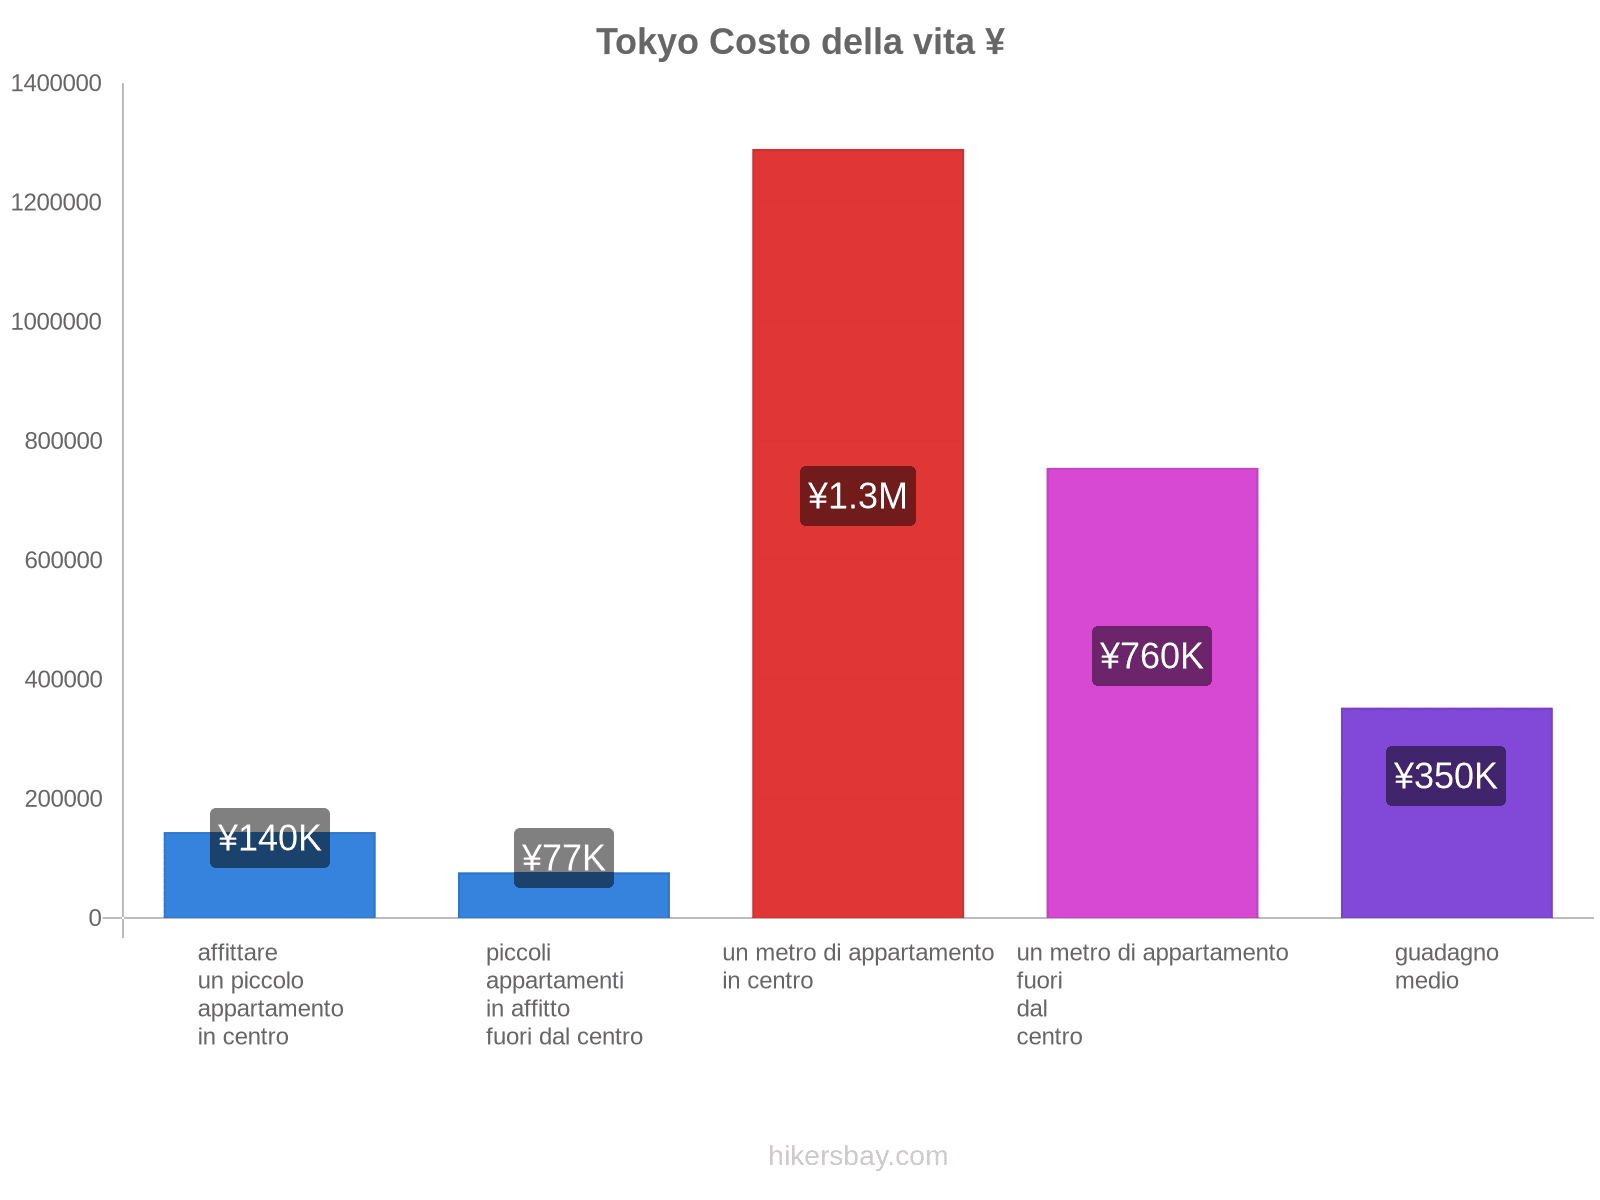 Tokyo costo della vita hikersbay.com